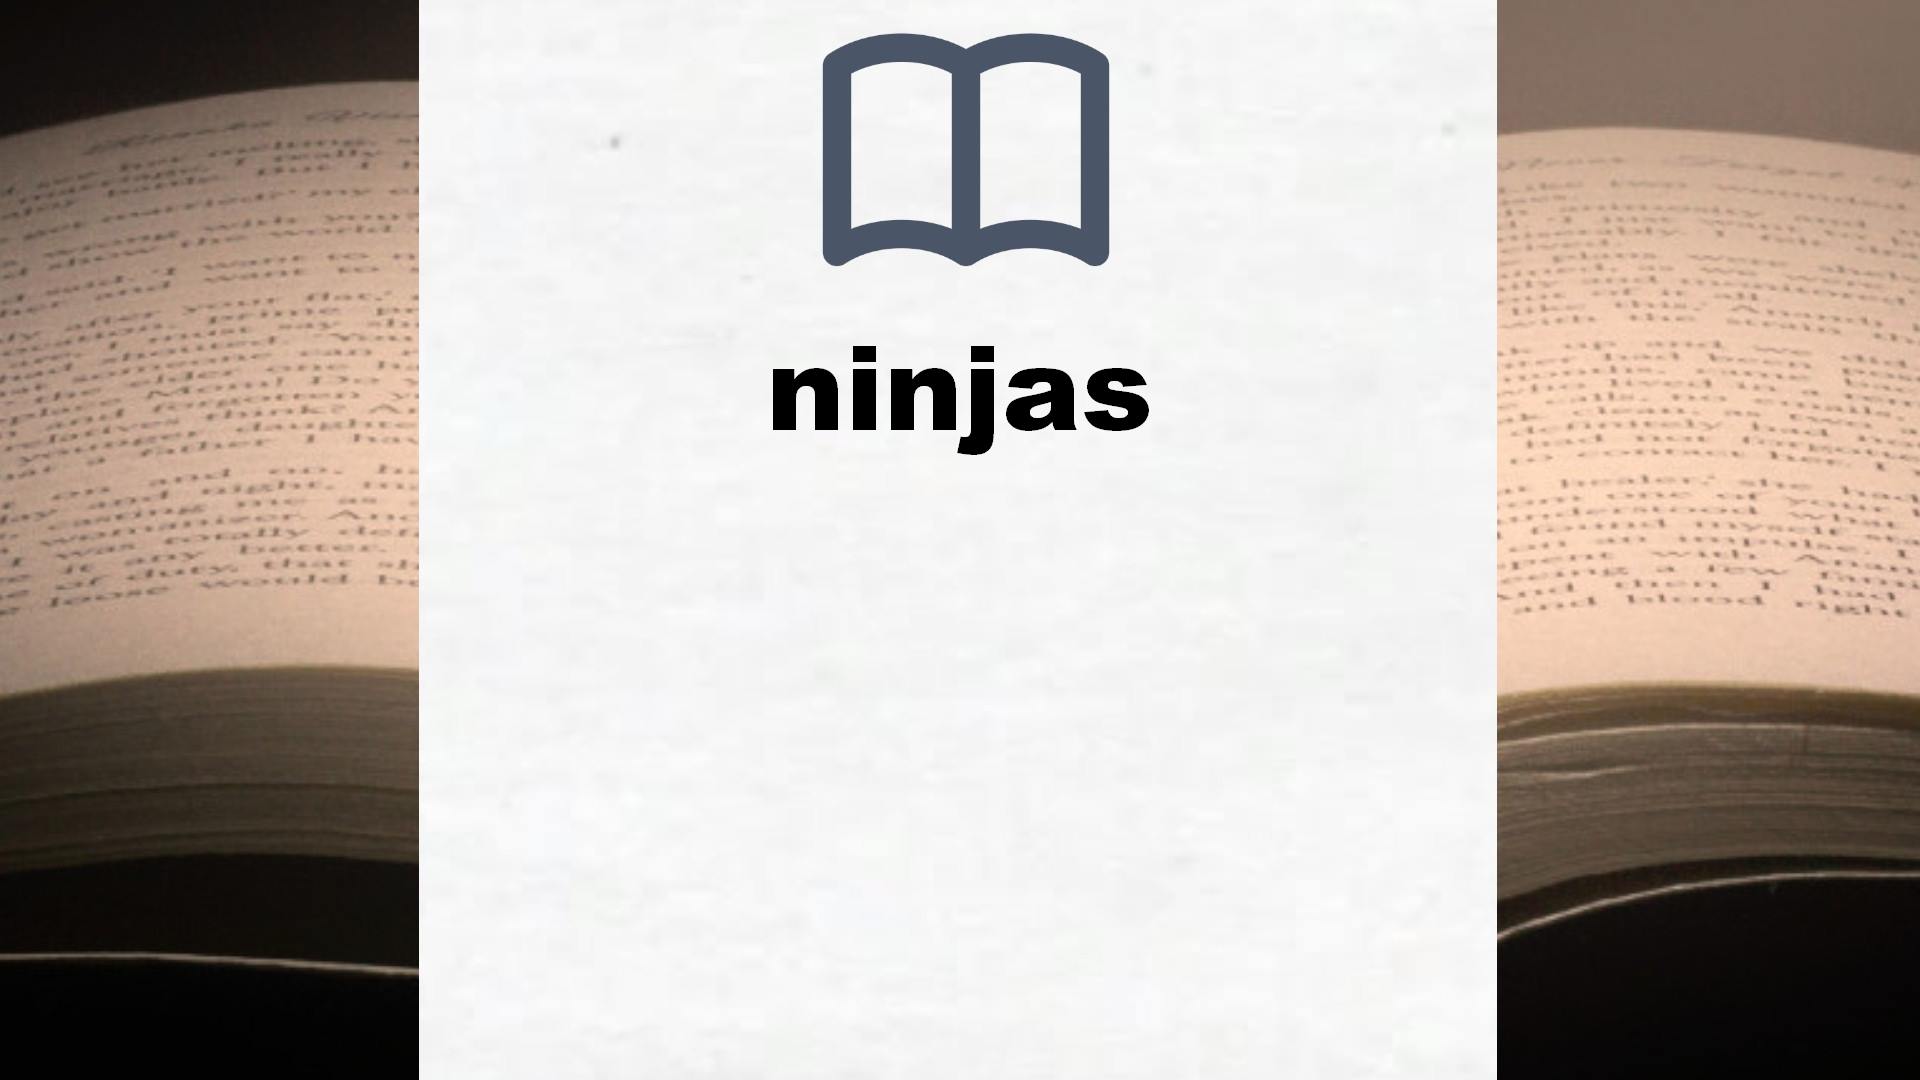 Libros sobre ninjas